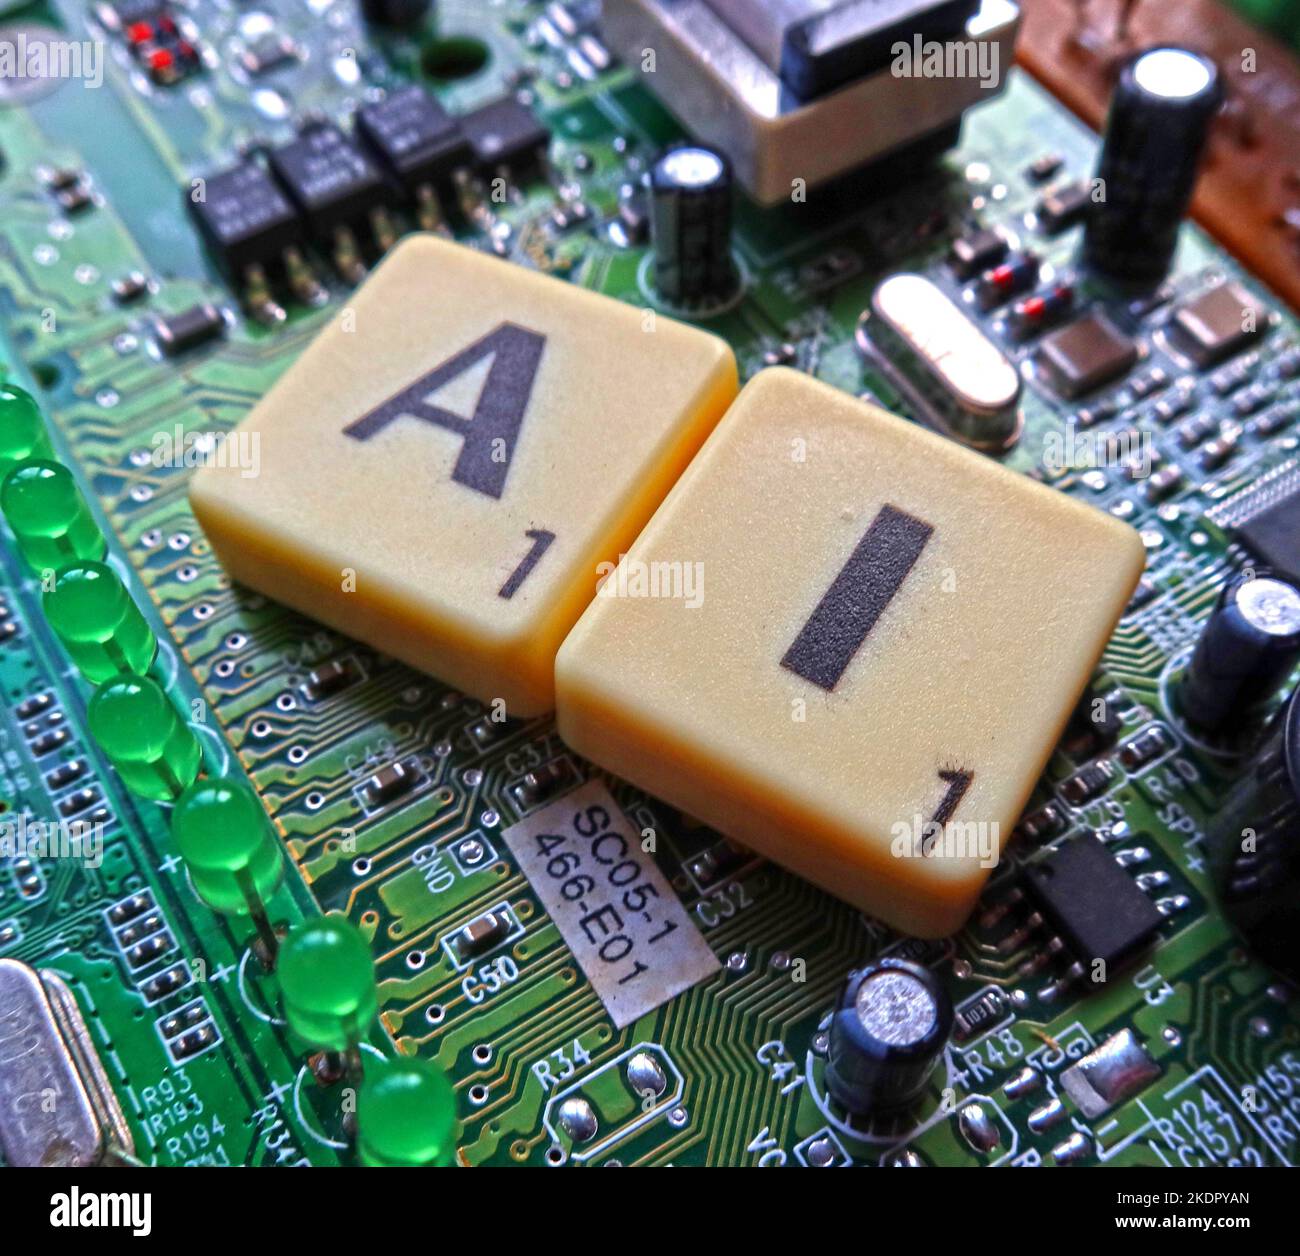 AI - Künstliche Intelligenz - Scrabble Buchstaben / Wort auf einer elektronischen Leiterplatte Stockfoto